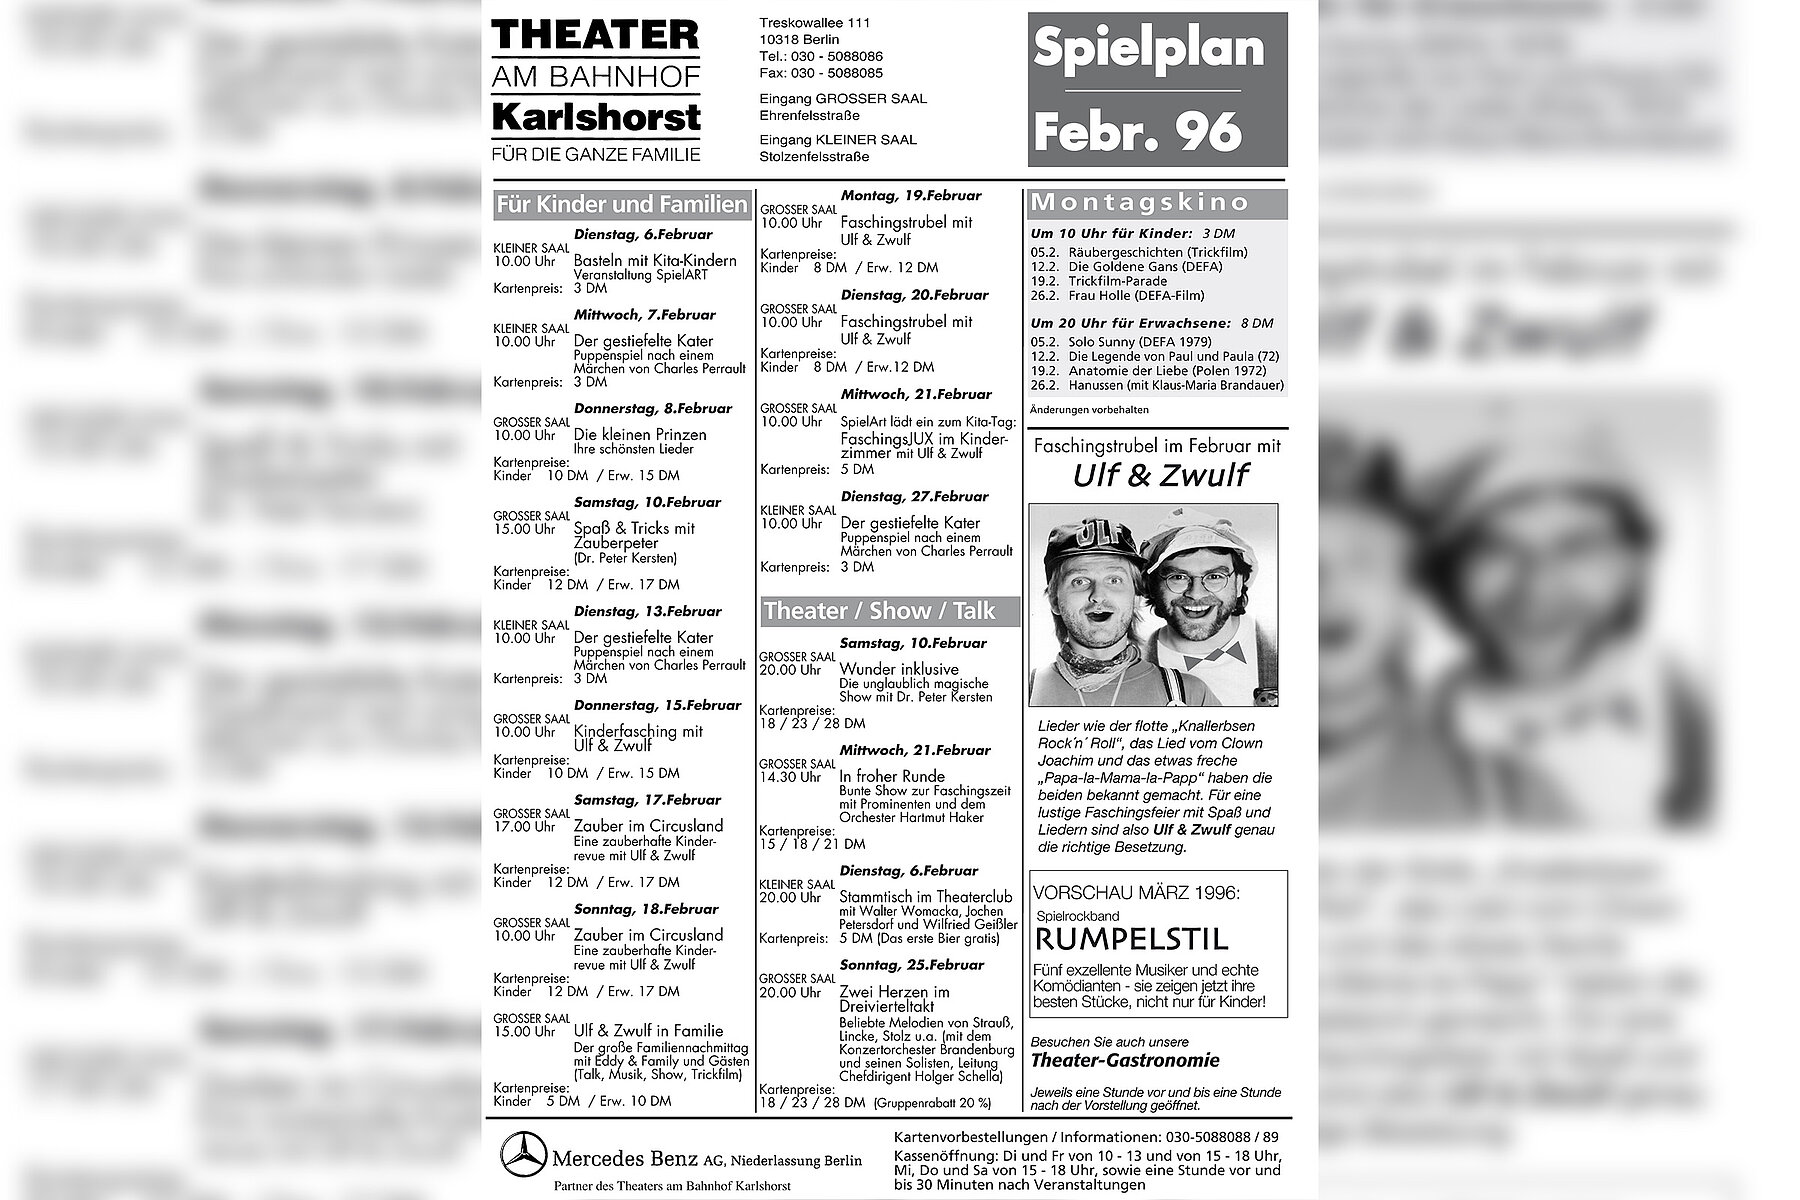 Der Spielplan vom Theater Karlshorsts aus dem Februar 1996.